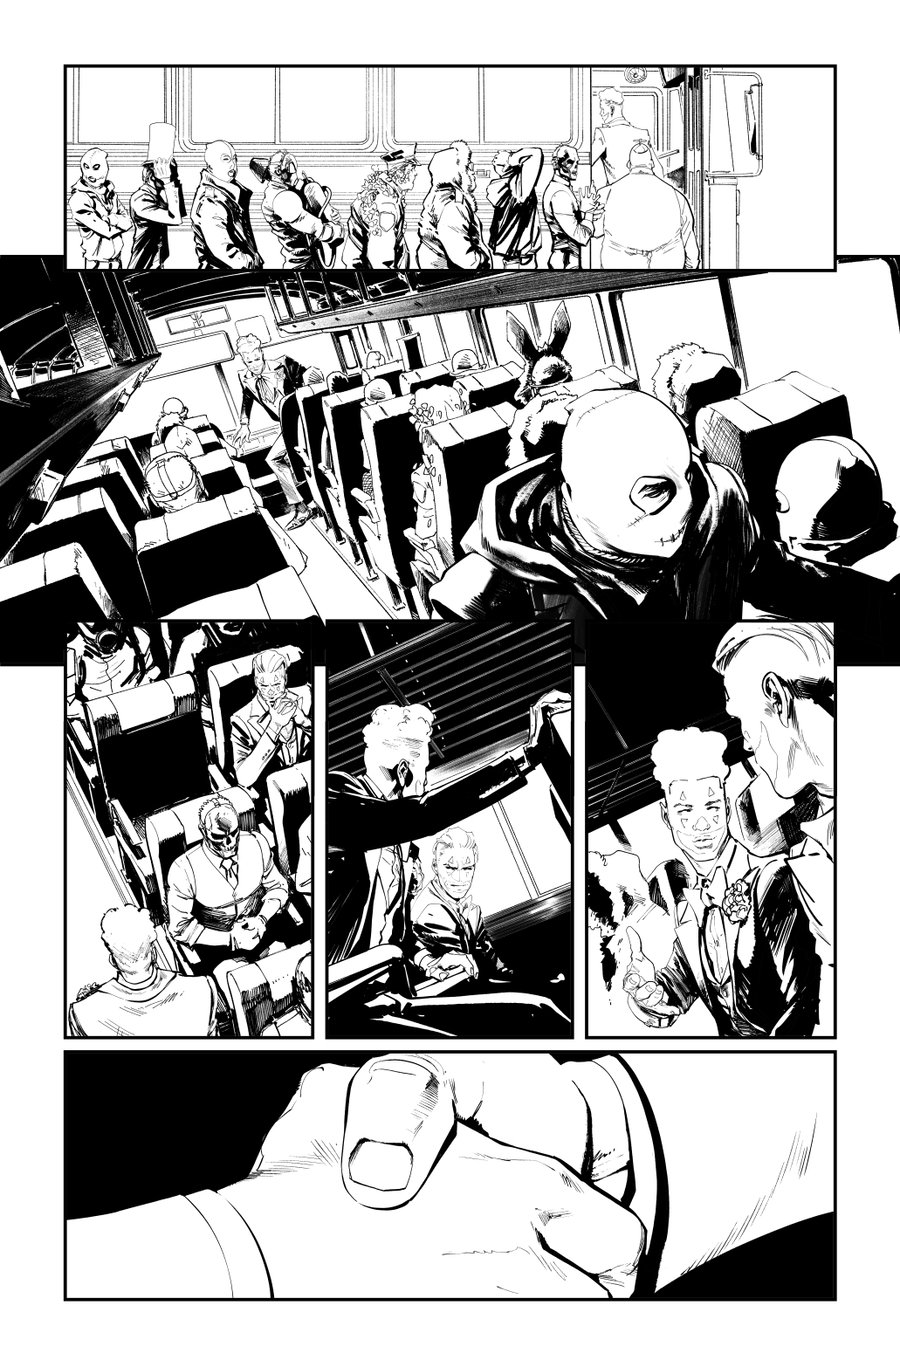 Image of BATMAN KILLING TIME #5 p.13